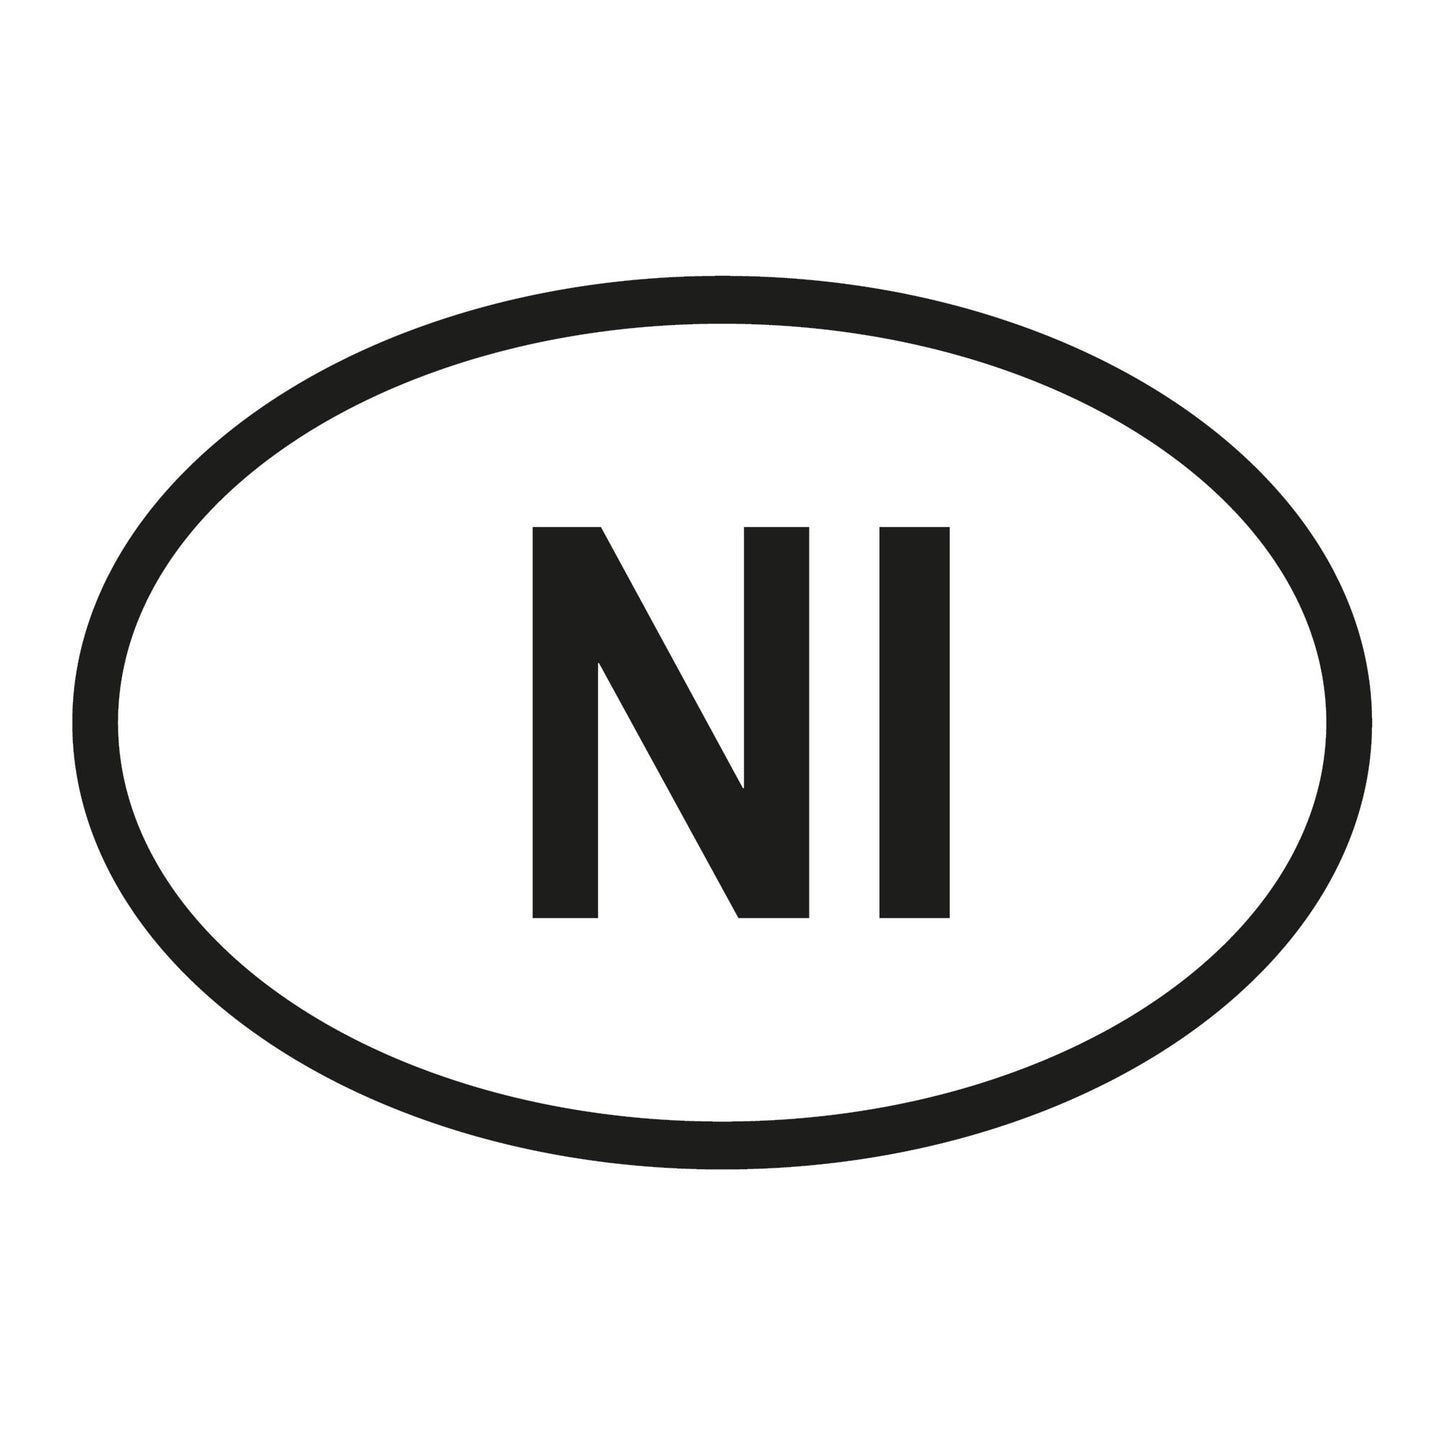 Autoaufkleber - Nordirland NI - 160x110mm